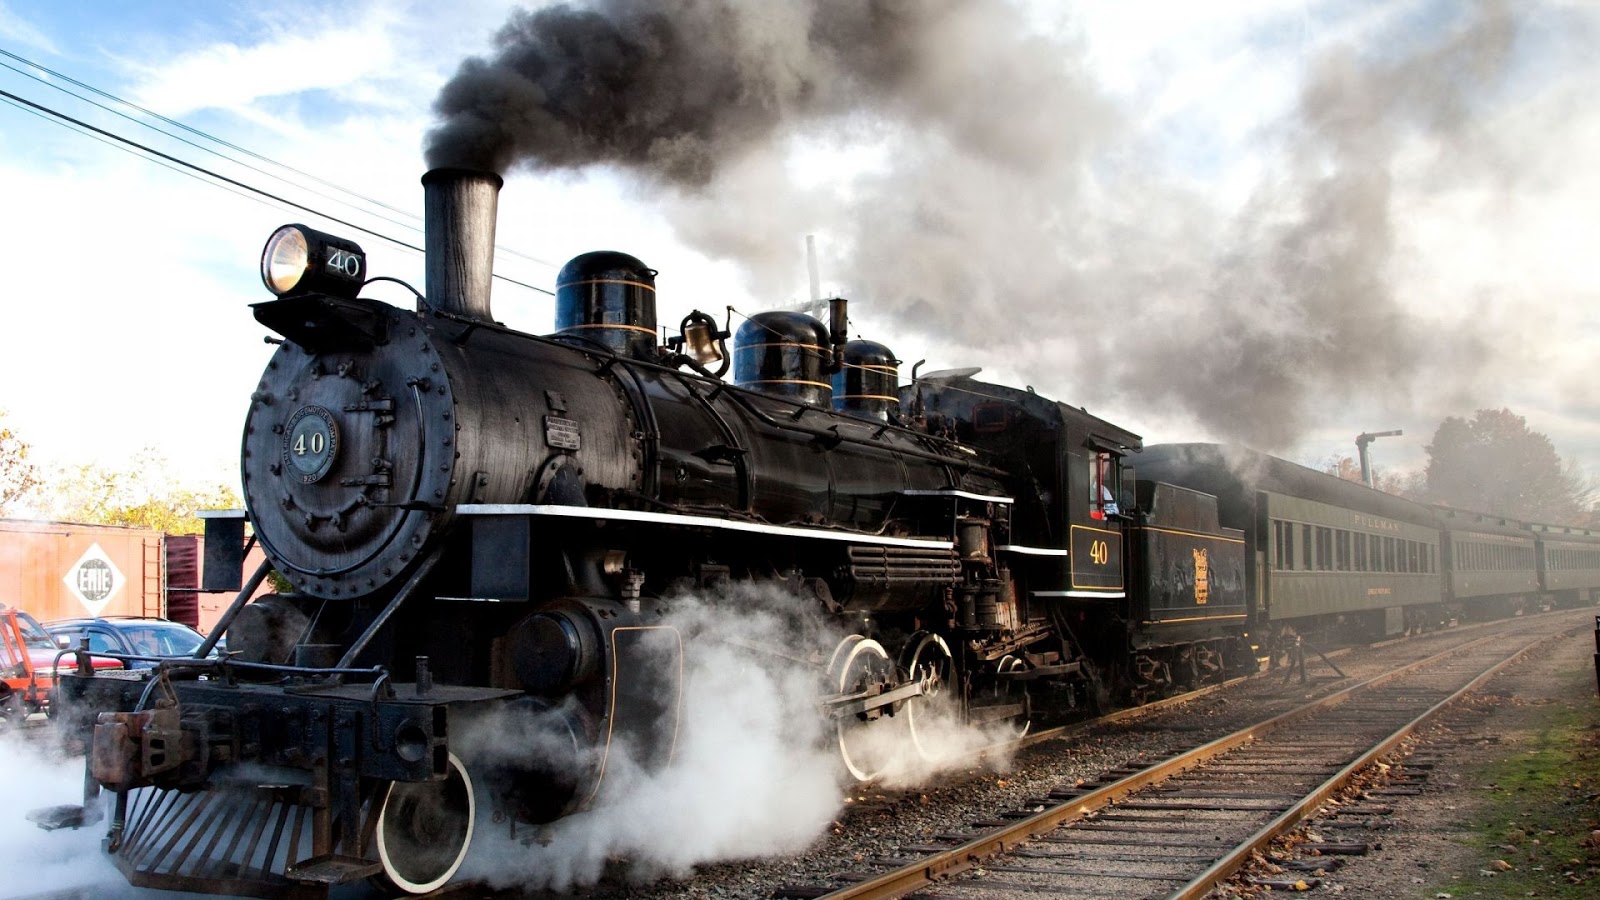 train wallpaper hd,steam engine,transport,locomotive,steam,railway